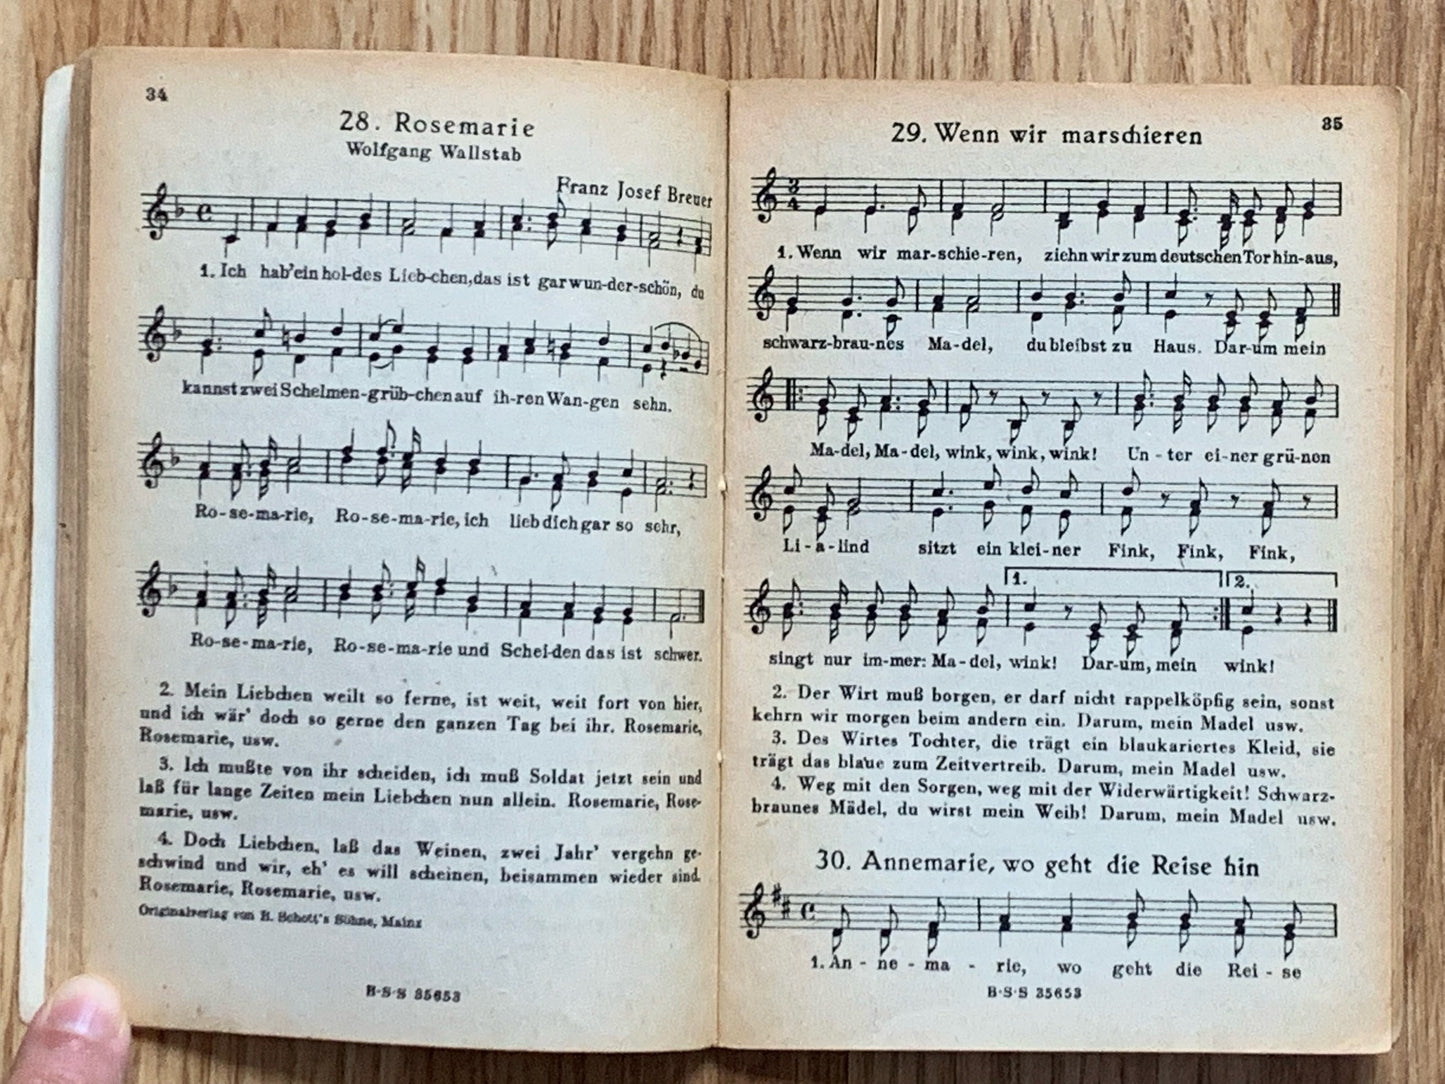 Das Neue Soldaten Liederbuch - WW2 German army songbook